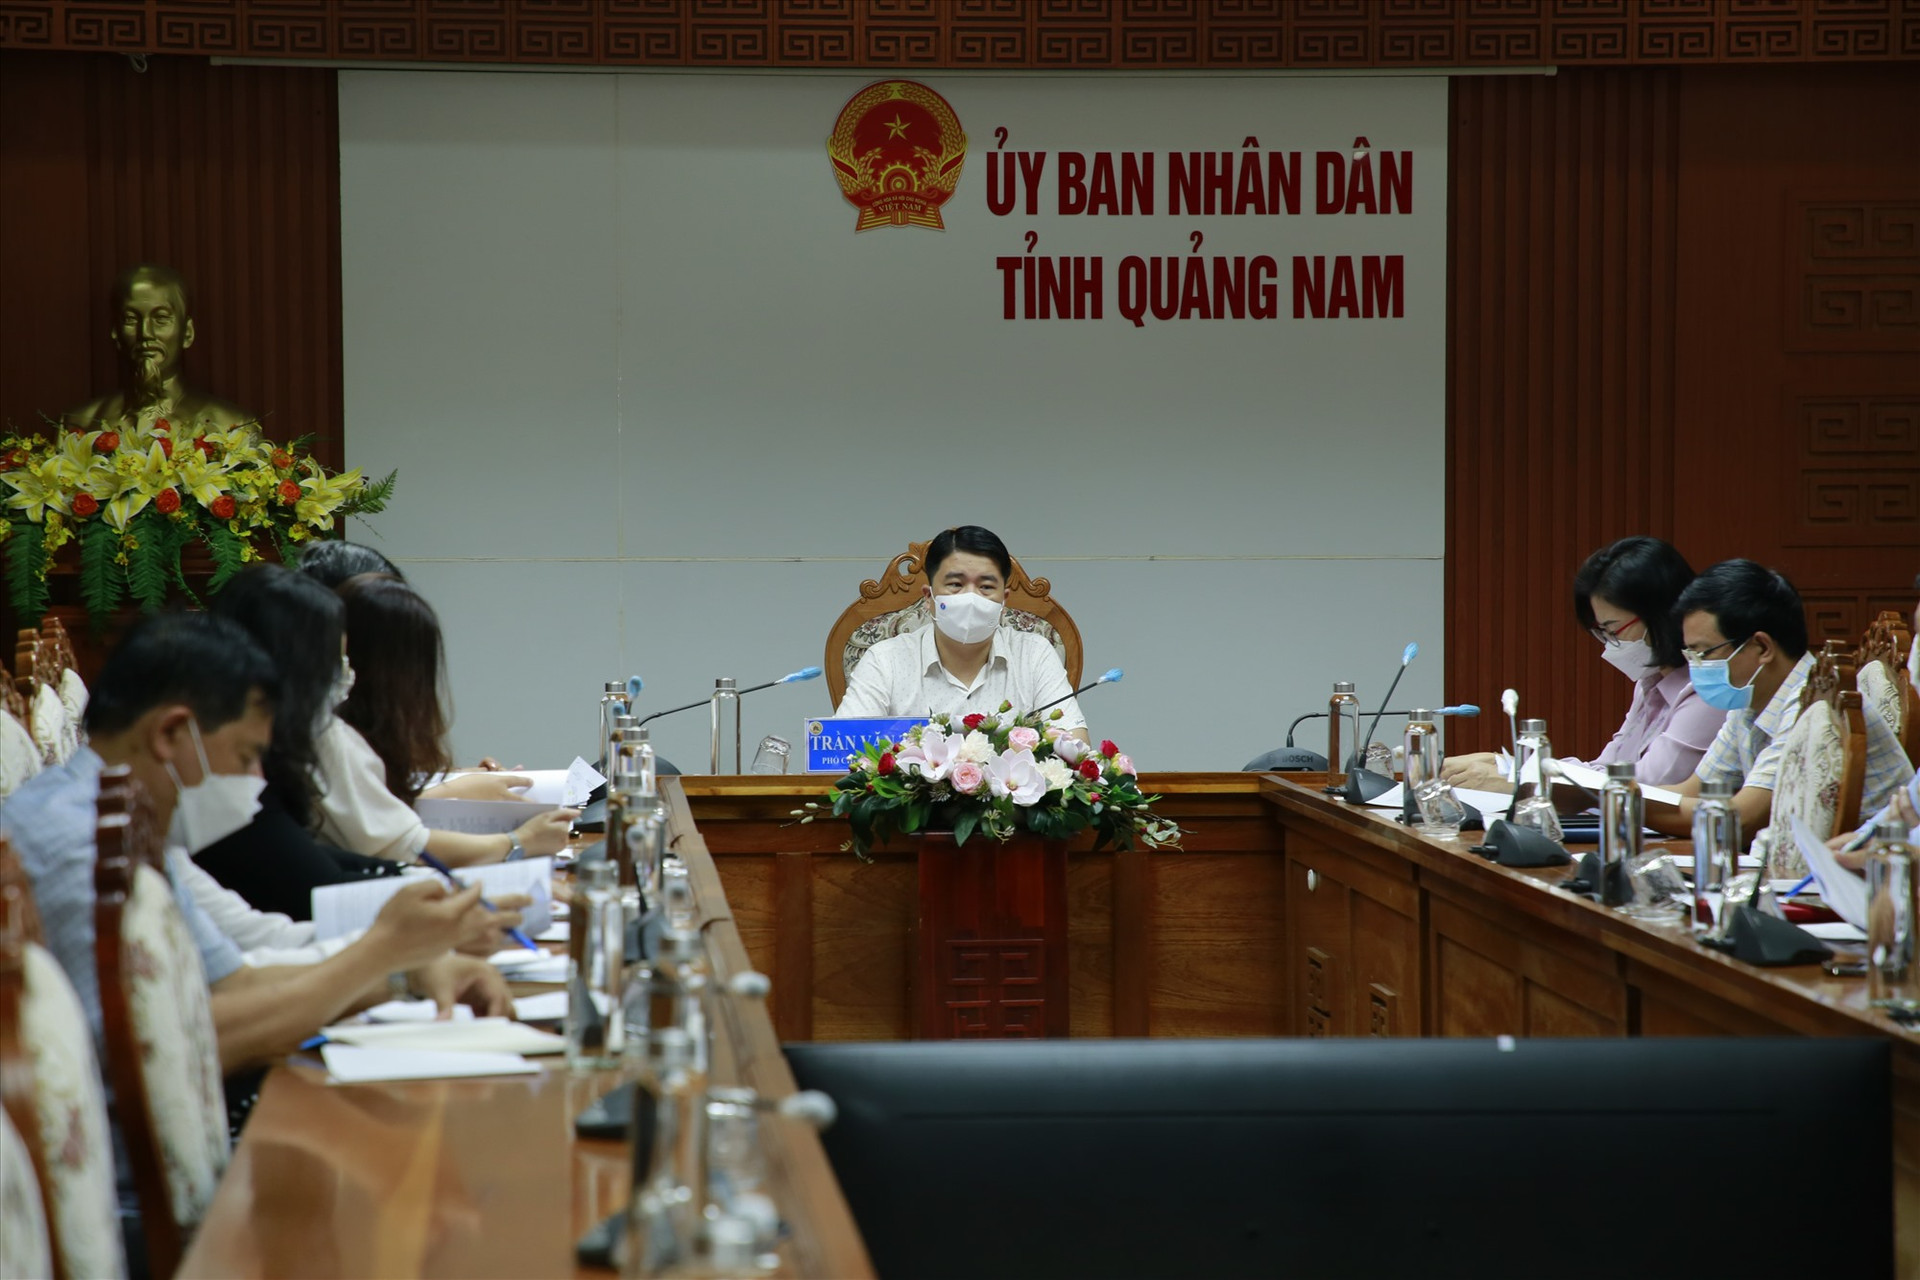 Phó Chủ tịch UBND tỉnh Trần Văn Tân chủ trì buổi làm việc sáng nay, 15.3. Ảnh: T.C